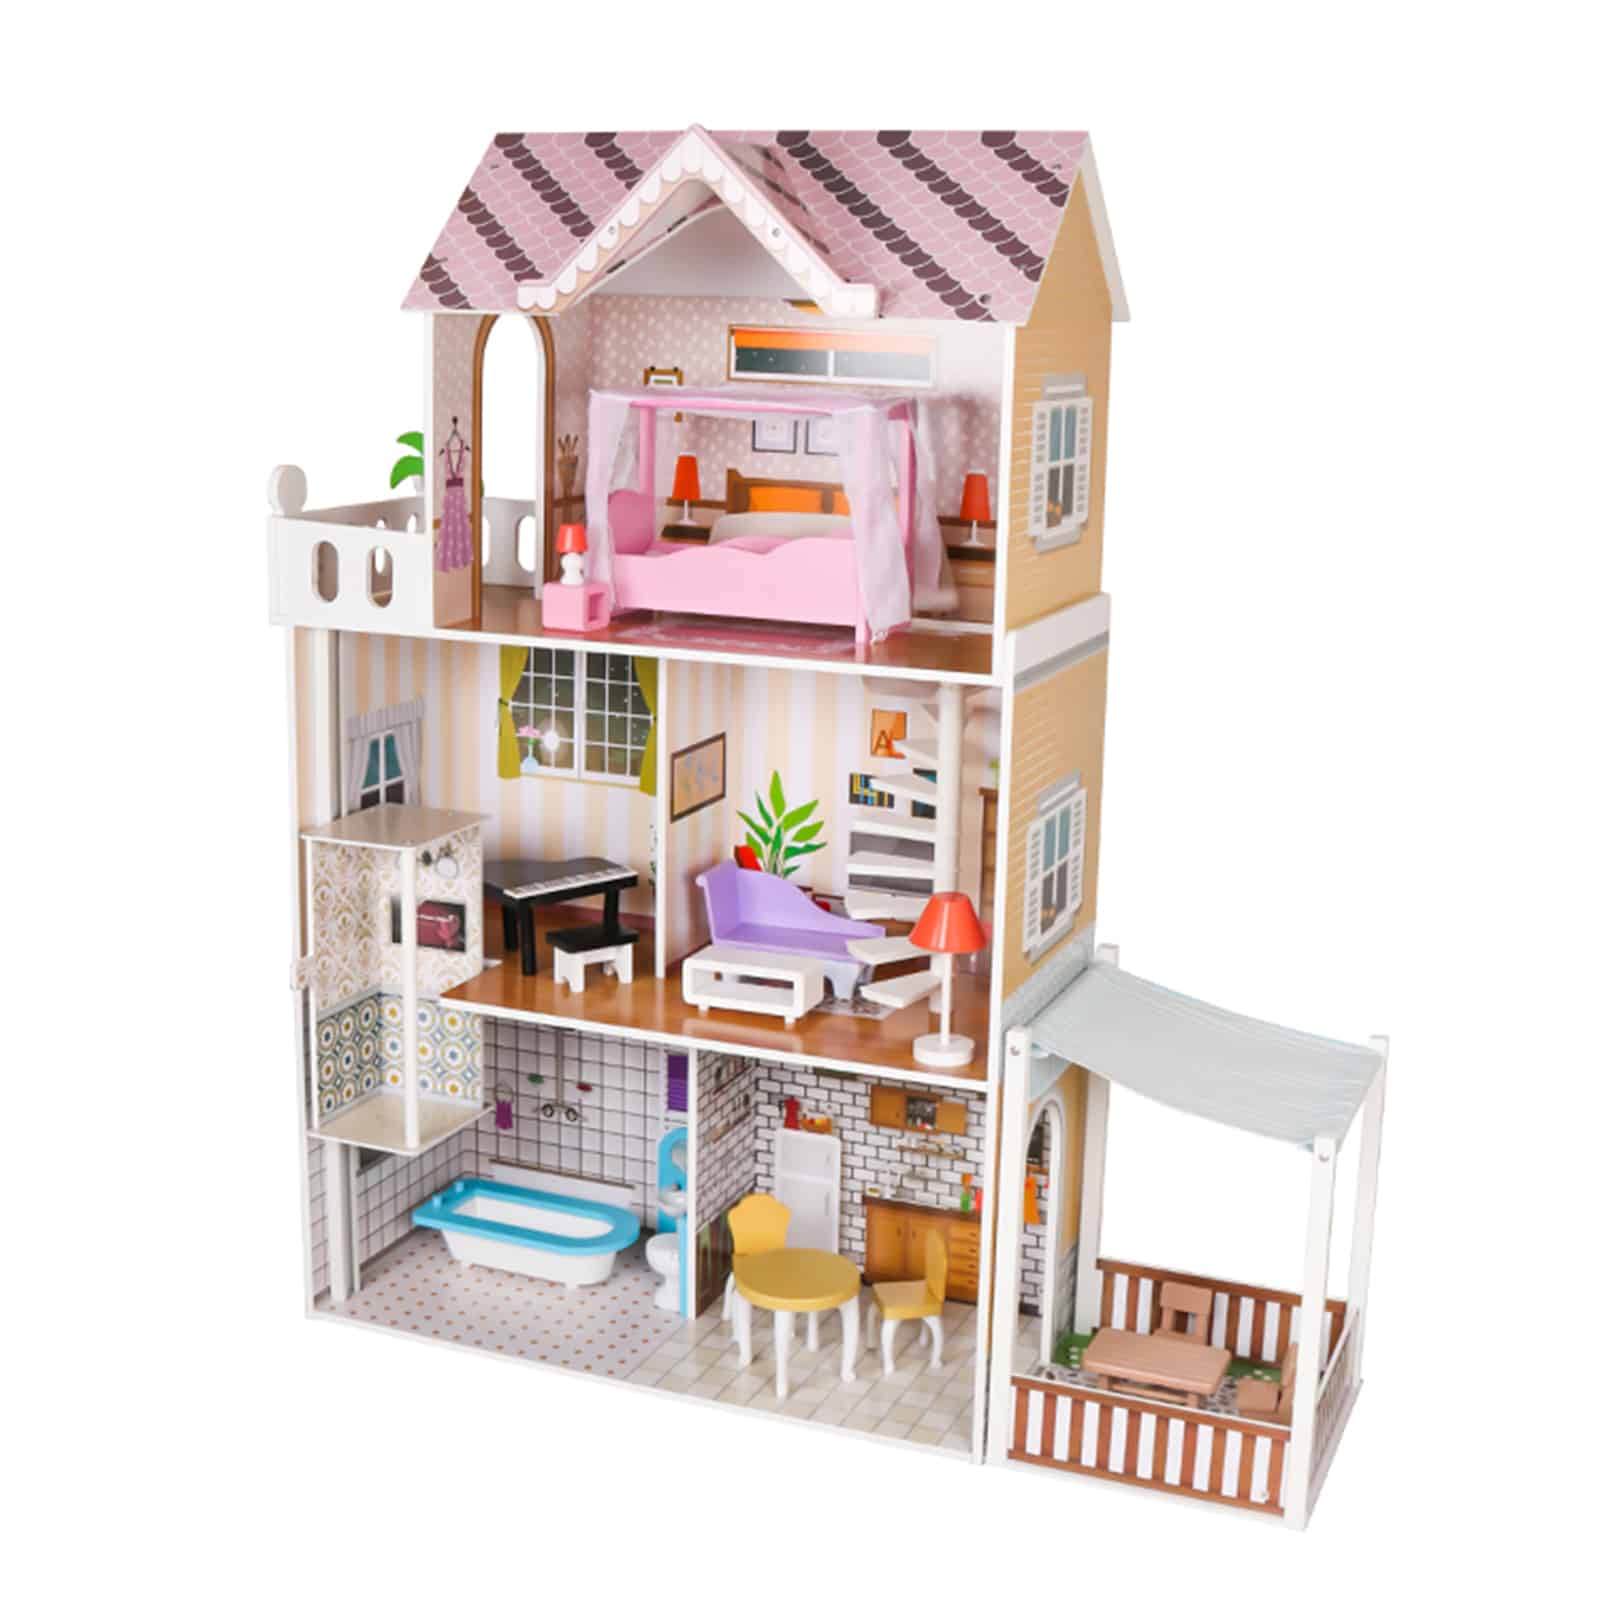 Casa delle bambole in legno: prezzo e offerte